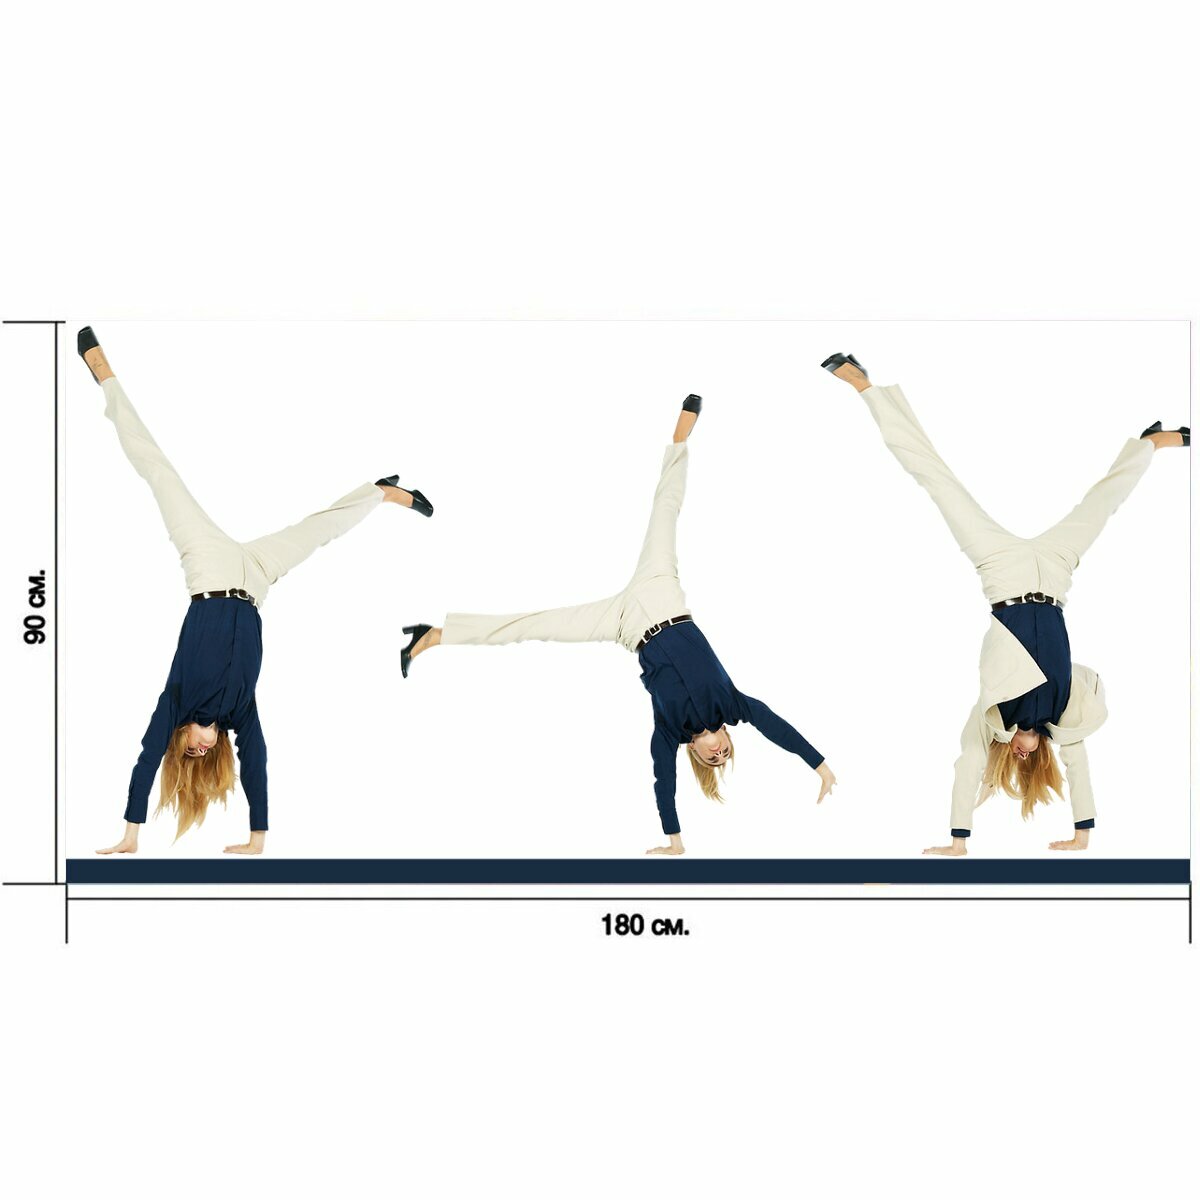 Большой постер "Гимнастка, женщина, фитнес" 180 x 90 см. для интерьера